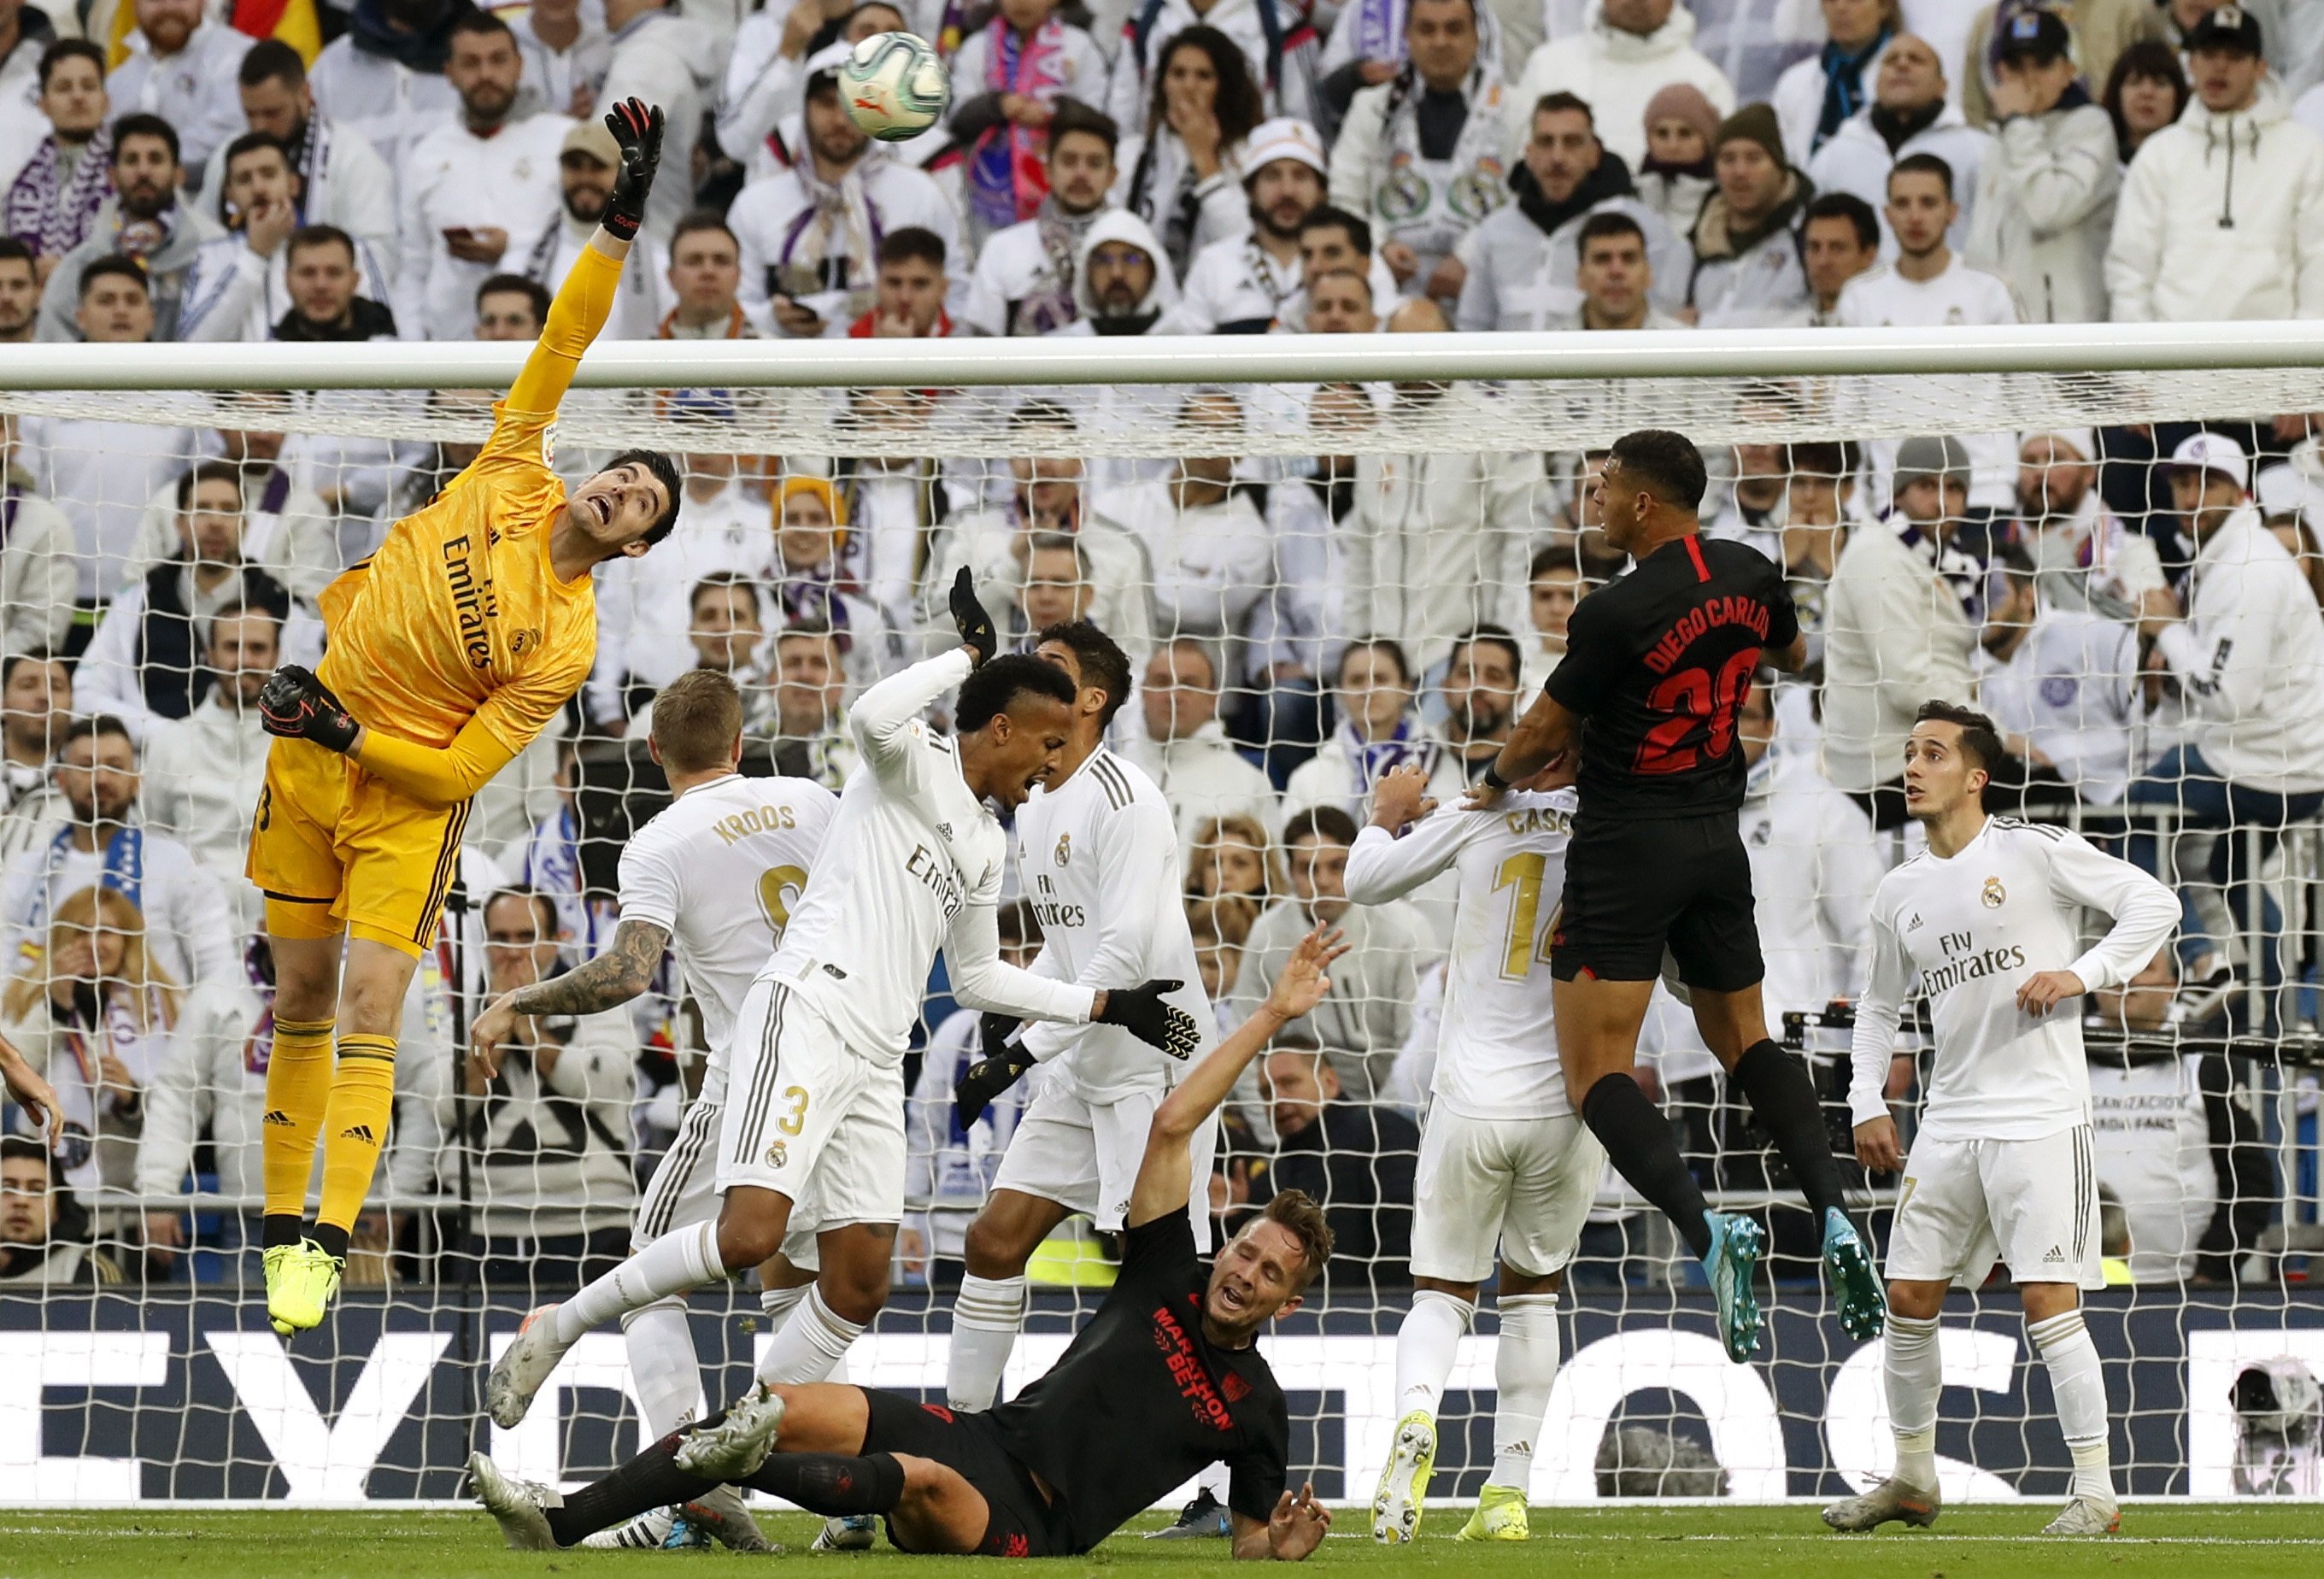 Escàndol a Madrid: l'àrbitre anul·la un gol legal al Sevilla